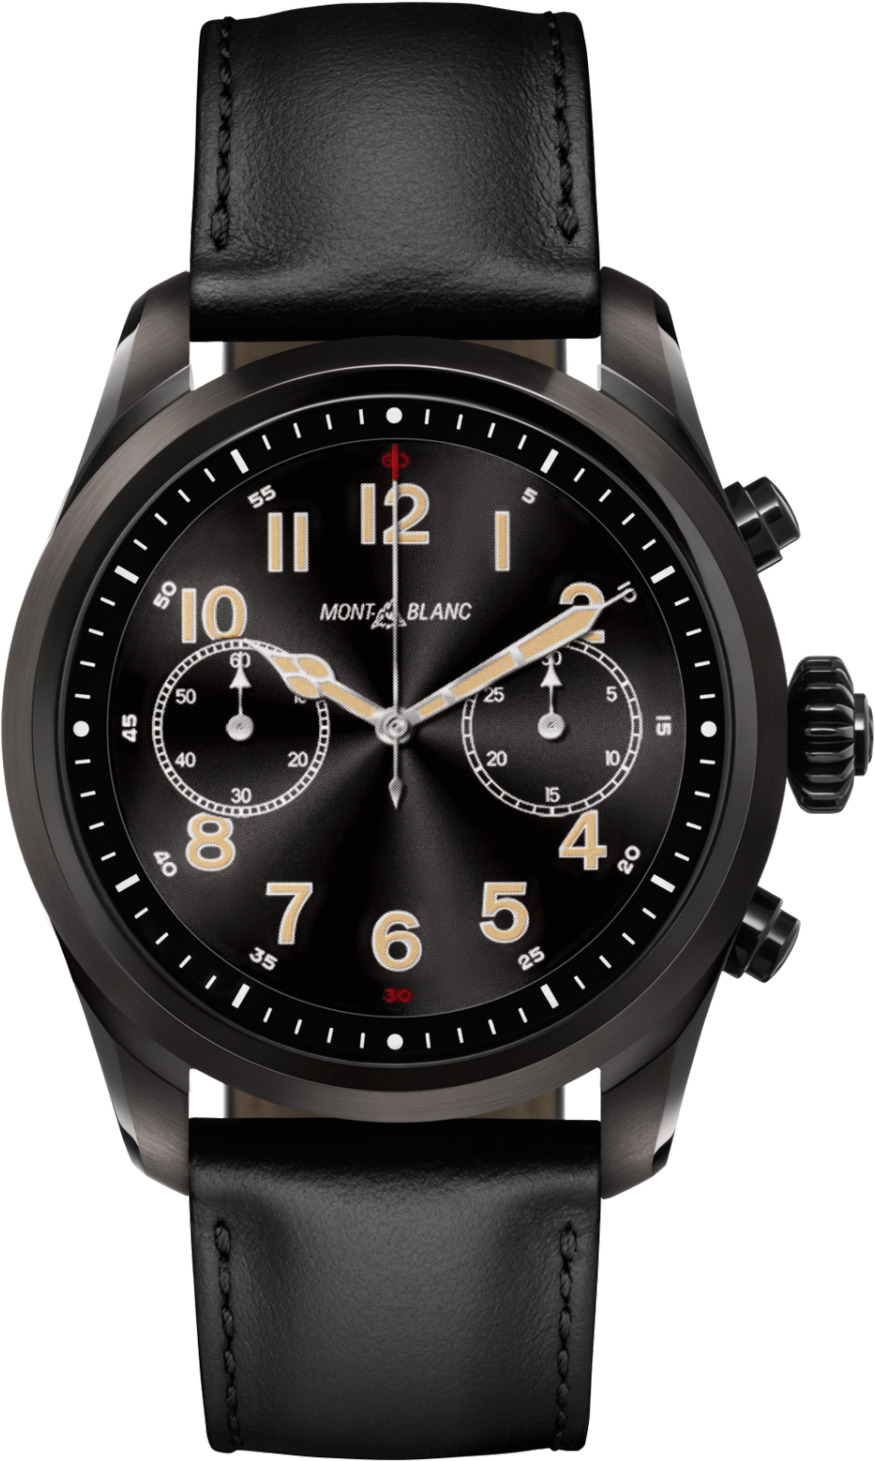 Đồng hồ thông minh - Smart watch Montblanc Summit 2 119438